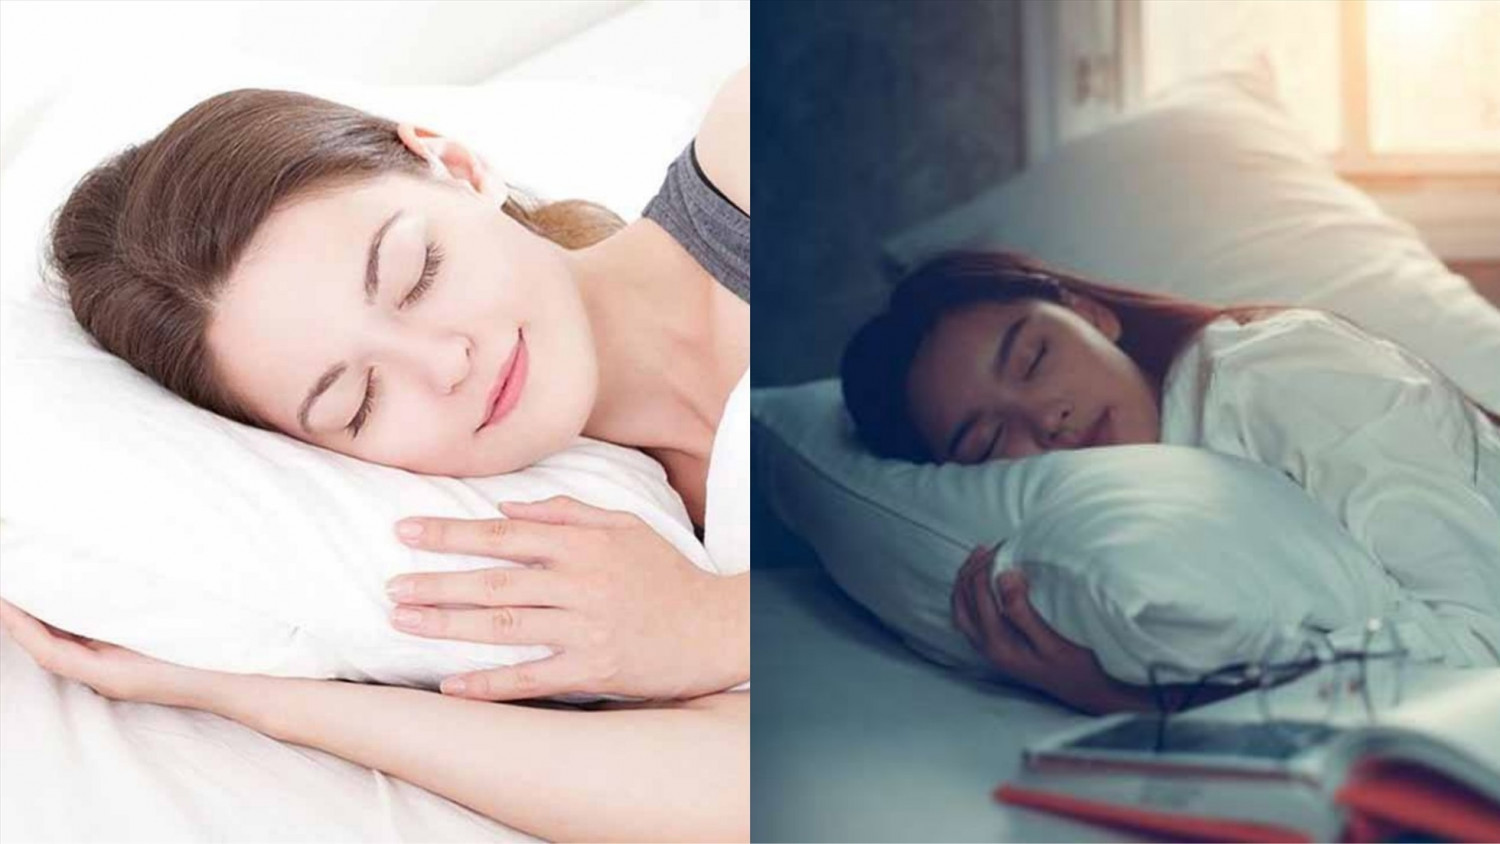 Khi bạn ngủ, gan vẫn hoạt động bình thường. Ảnh đồ họa: Hàn Lâm